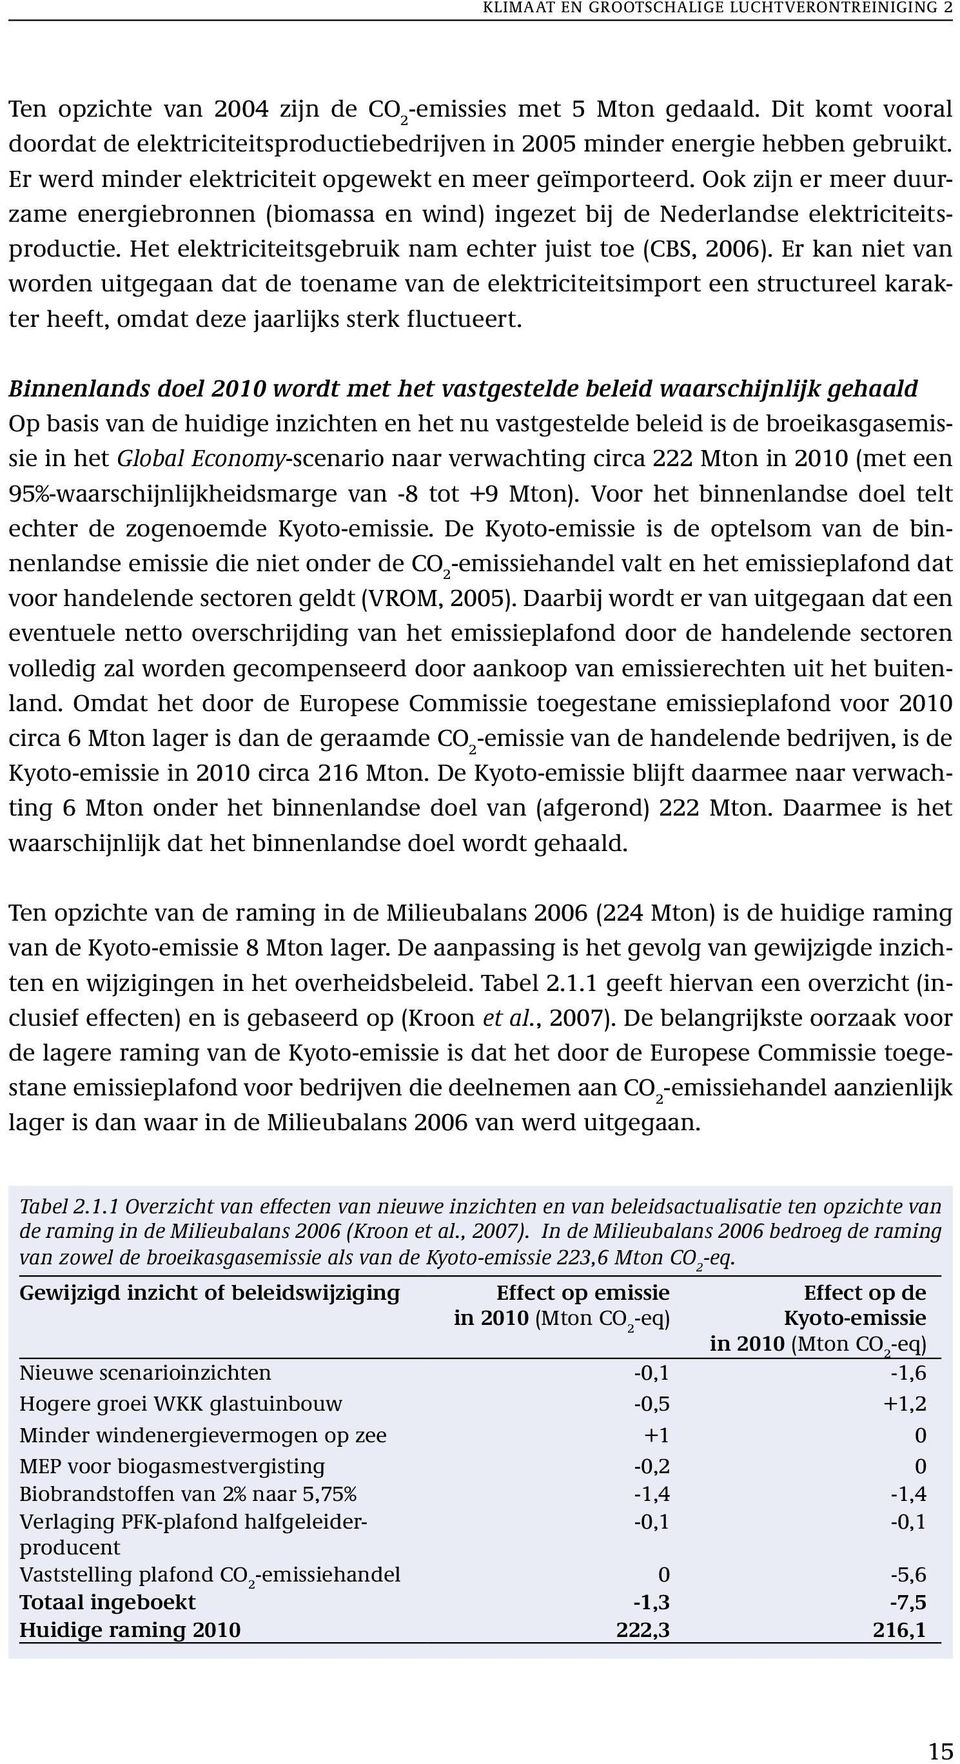 Ook zijn er meer duurzame energiebronnen (biomassa en wind) ingezet bij de Nederlandse elektriciteitsproductie. Het elektriciteitsgebruik nam echter juist toe (CBS, 2006).